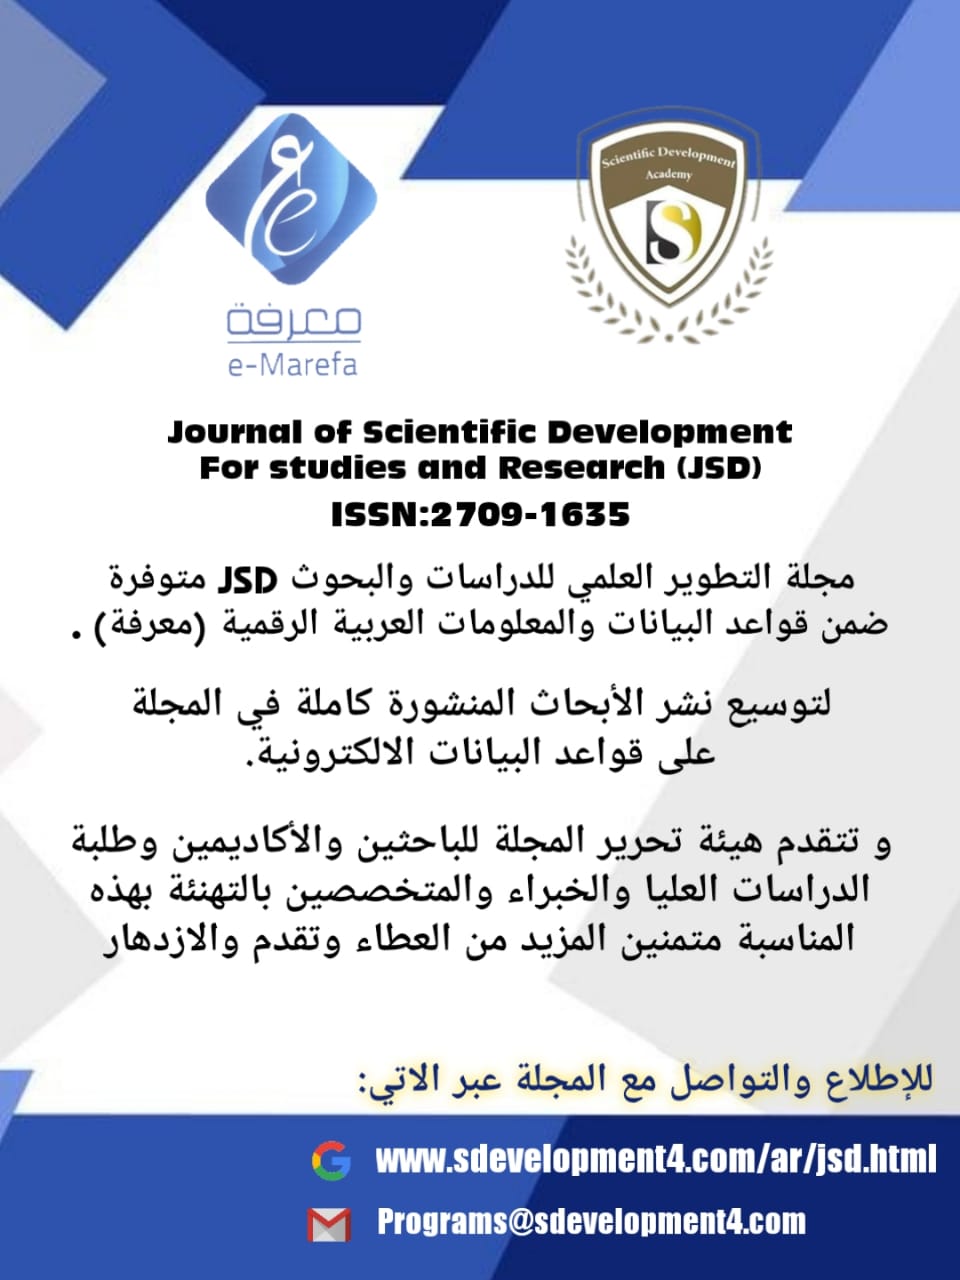 مجلة التطوير العلمي للدراسات والبحوث JSDمتوفره ضمن قواعد البيانات والمعلومات العربية الرقميه